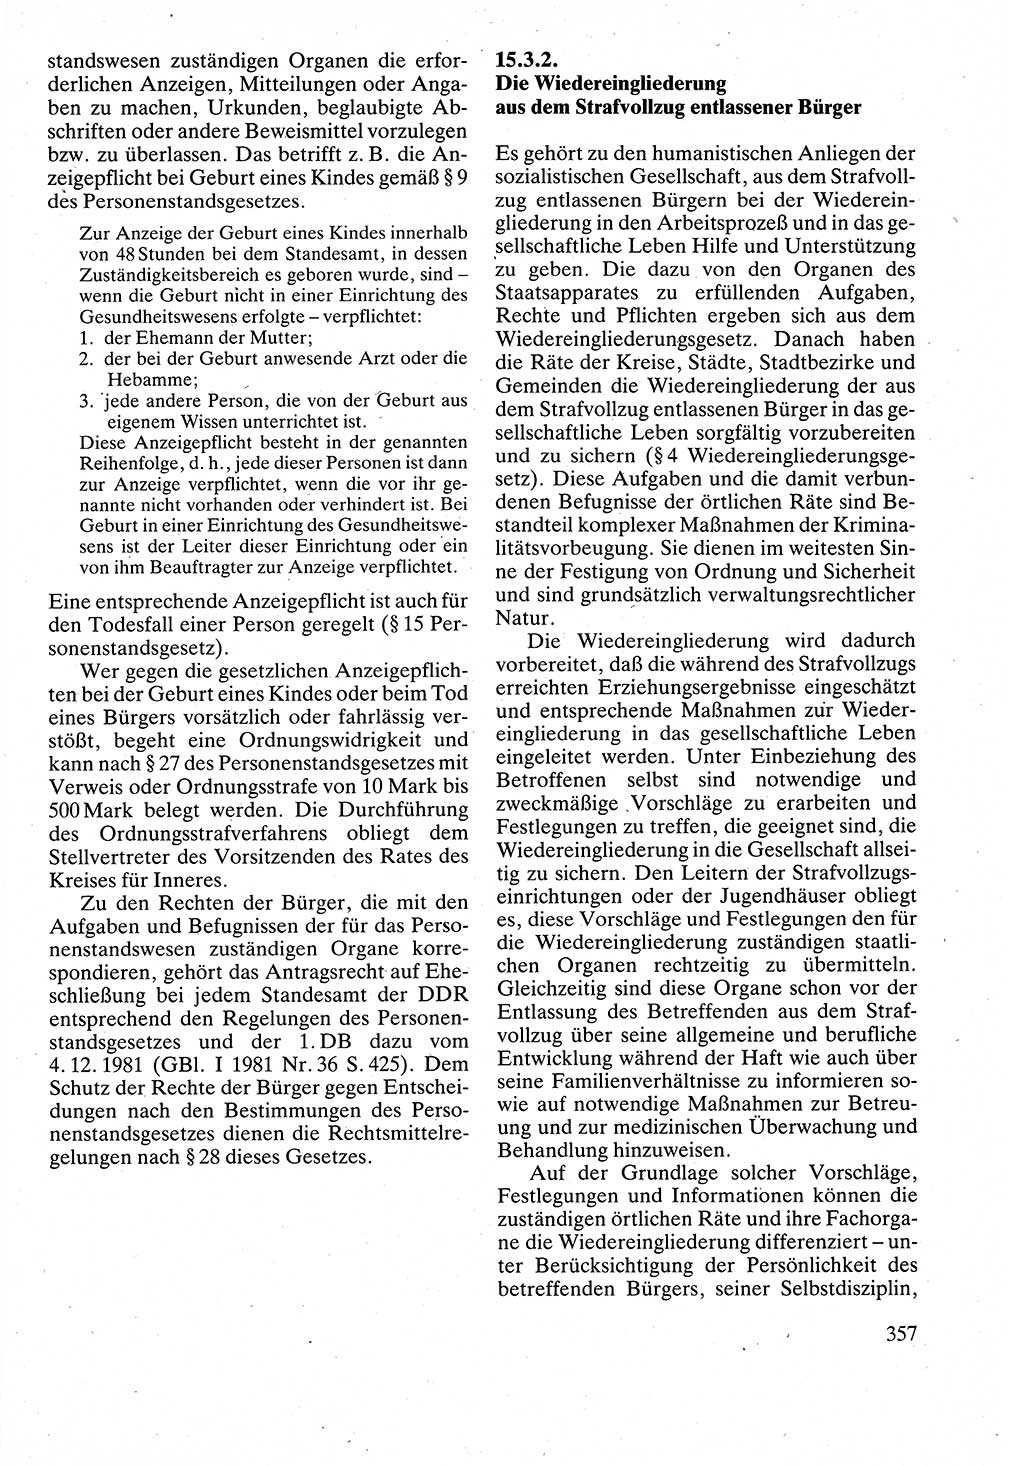 Verwaltungsrecht [Deutsche Demokratische Republik (DDR)], Lehrbuch 1988, Seite 357 (Verw.-R. DDR Lb. 1988, S. 357)